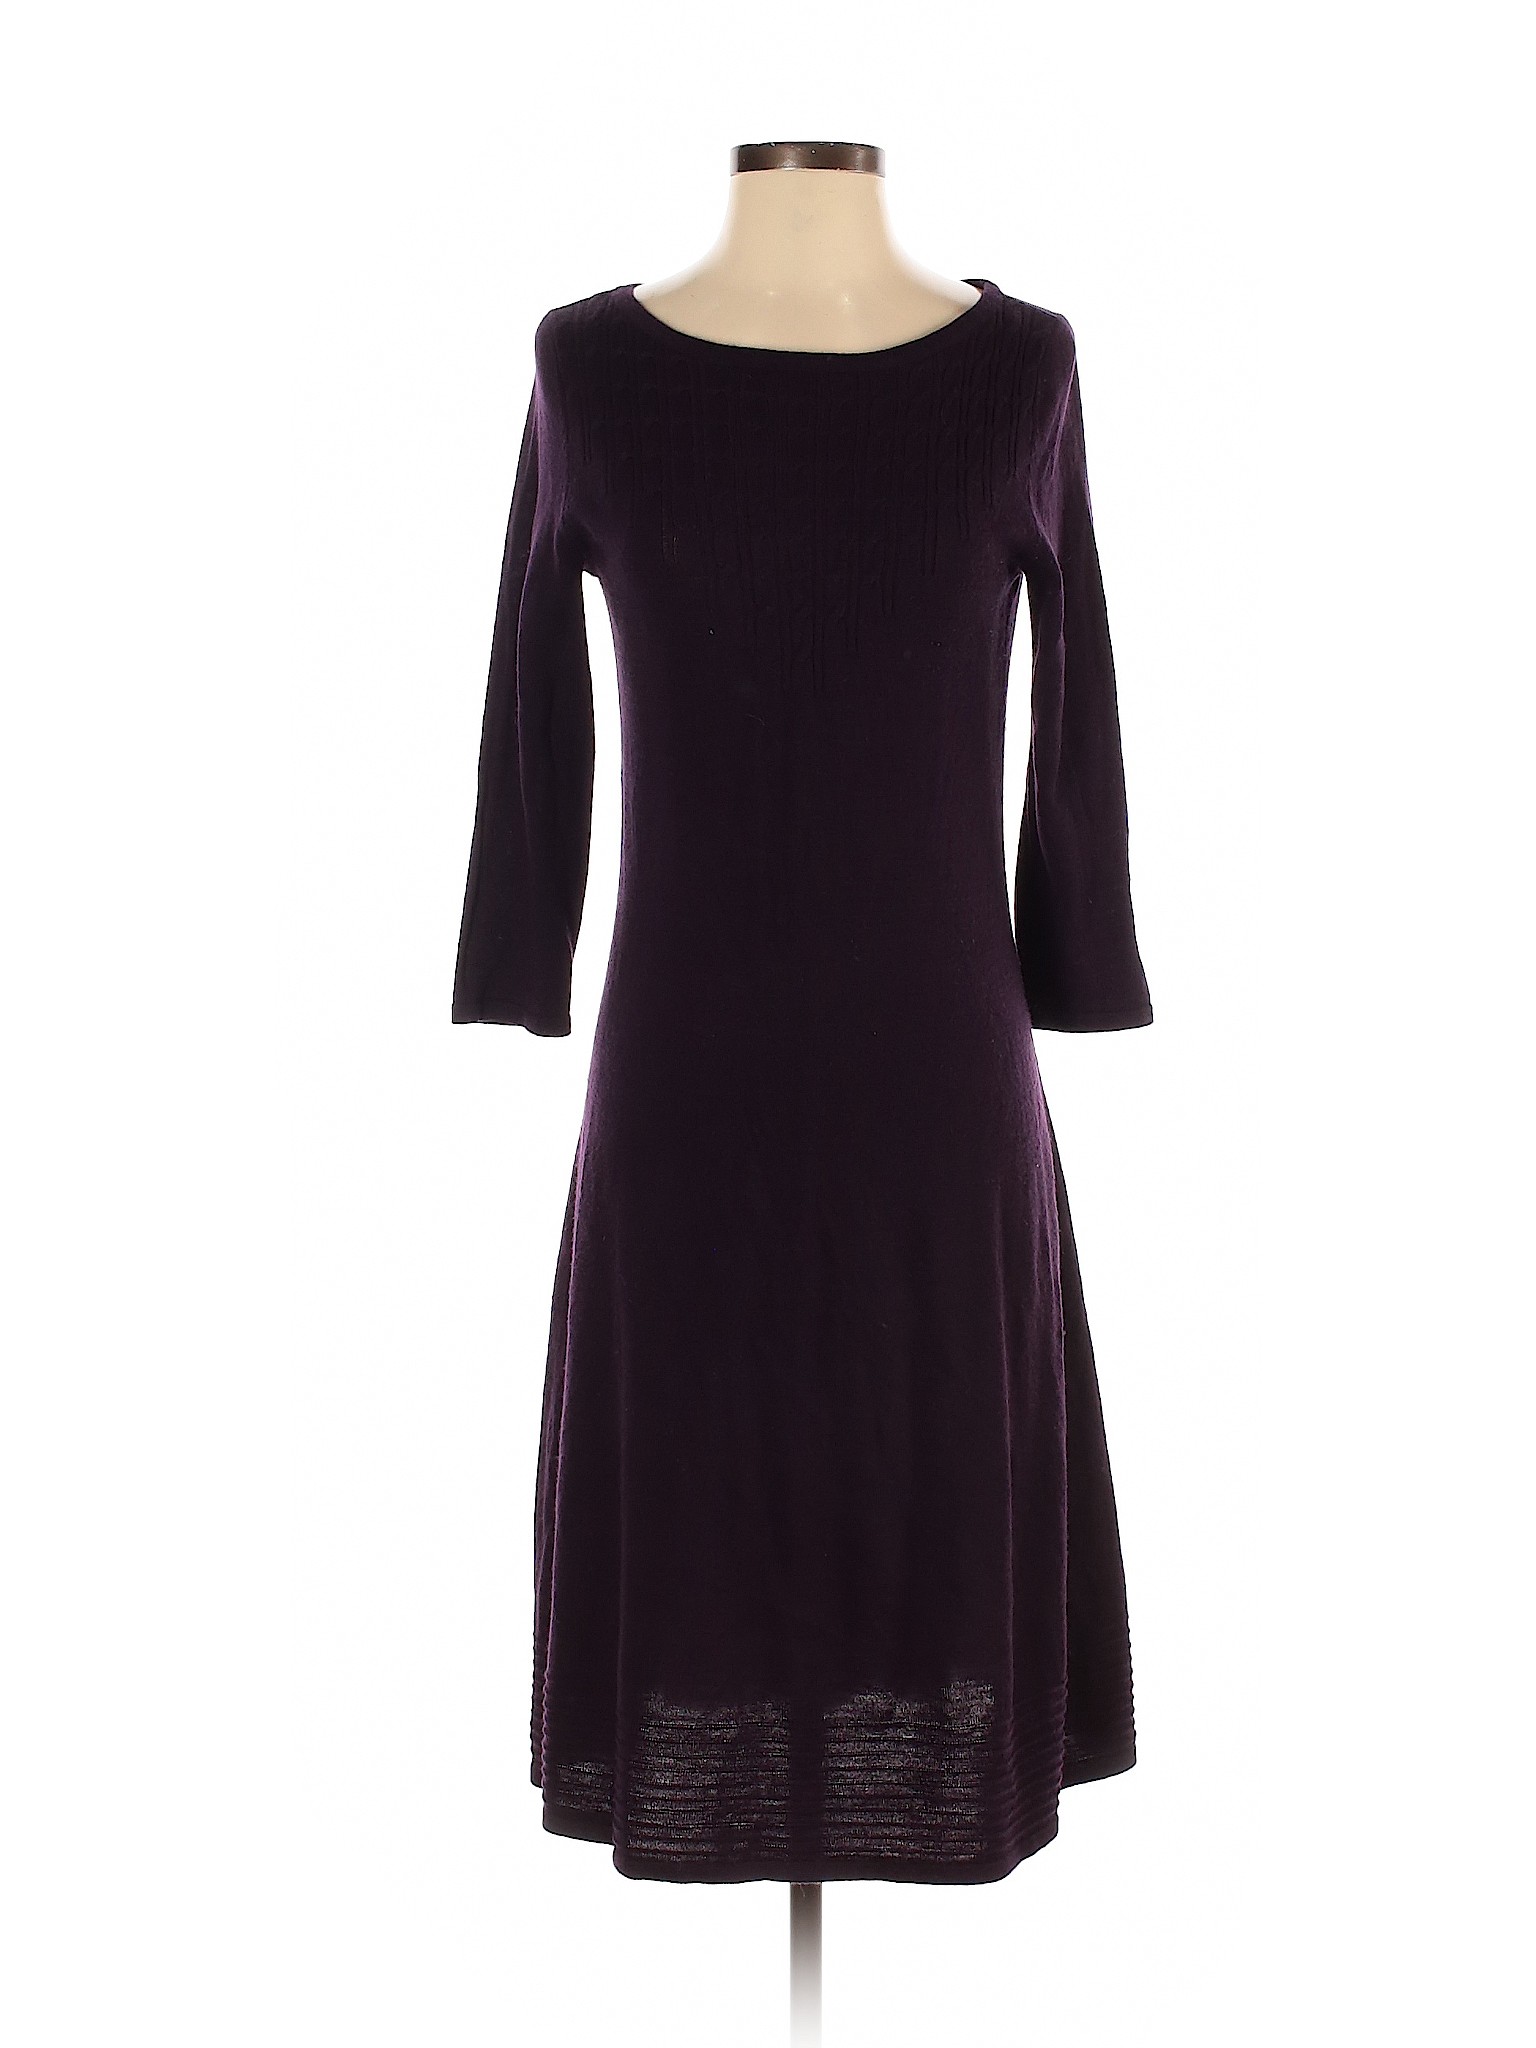 Kasper Women Purple Casual Dress S | eBay